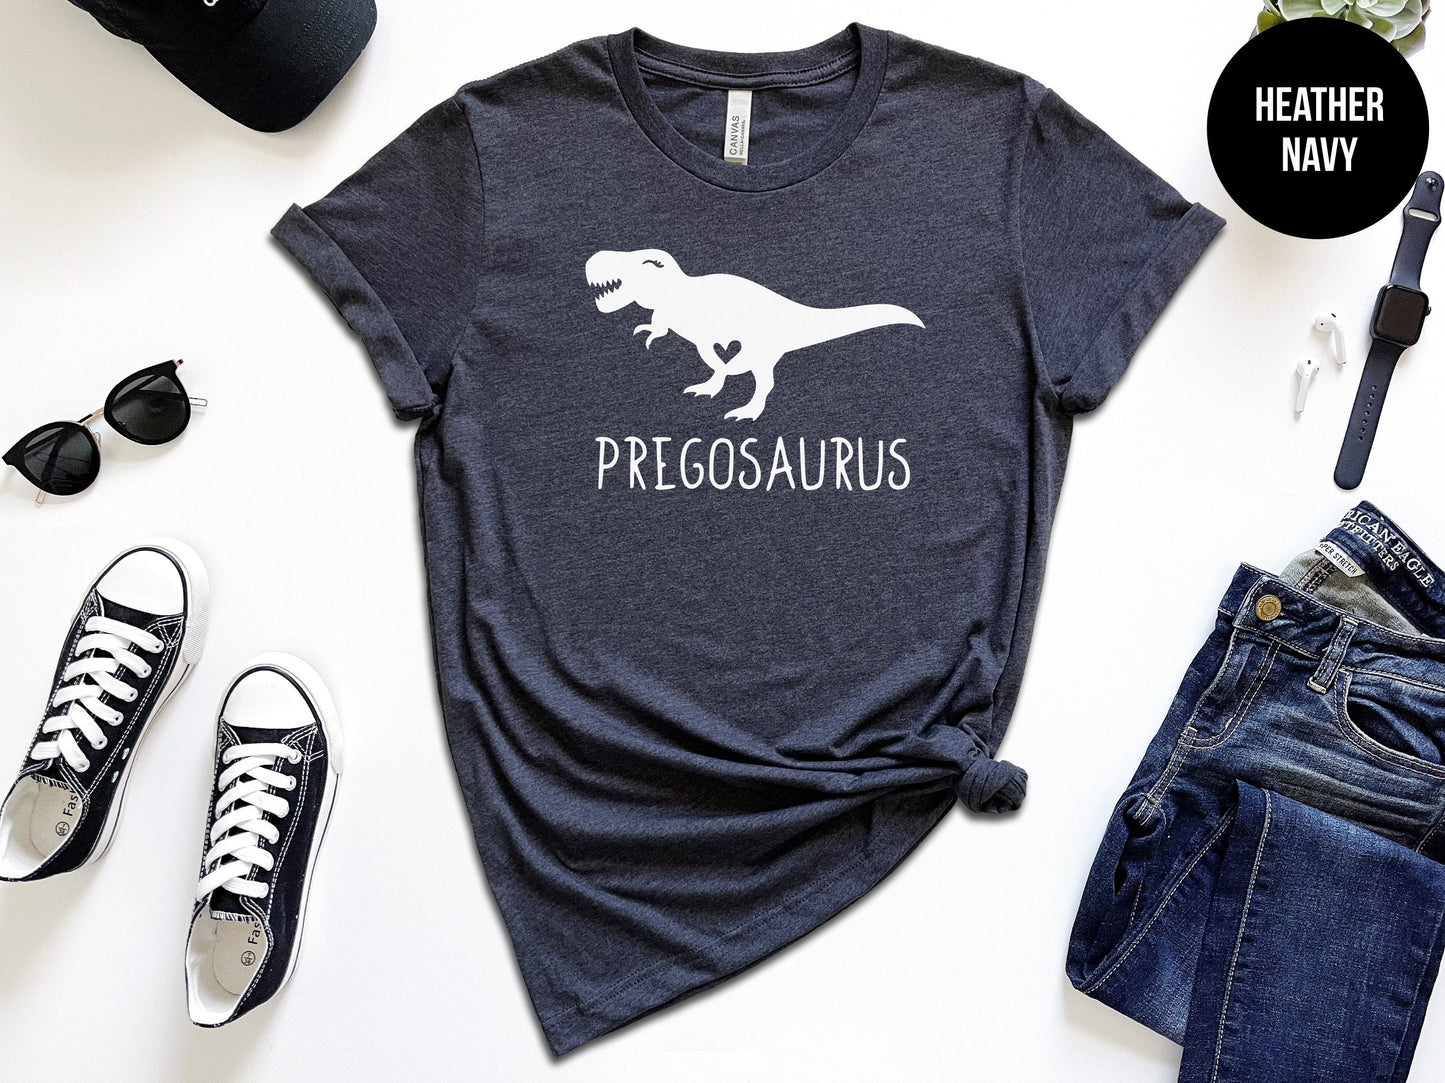 Pregosaurus